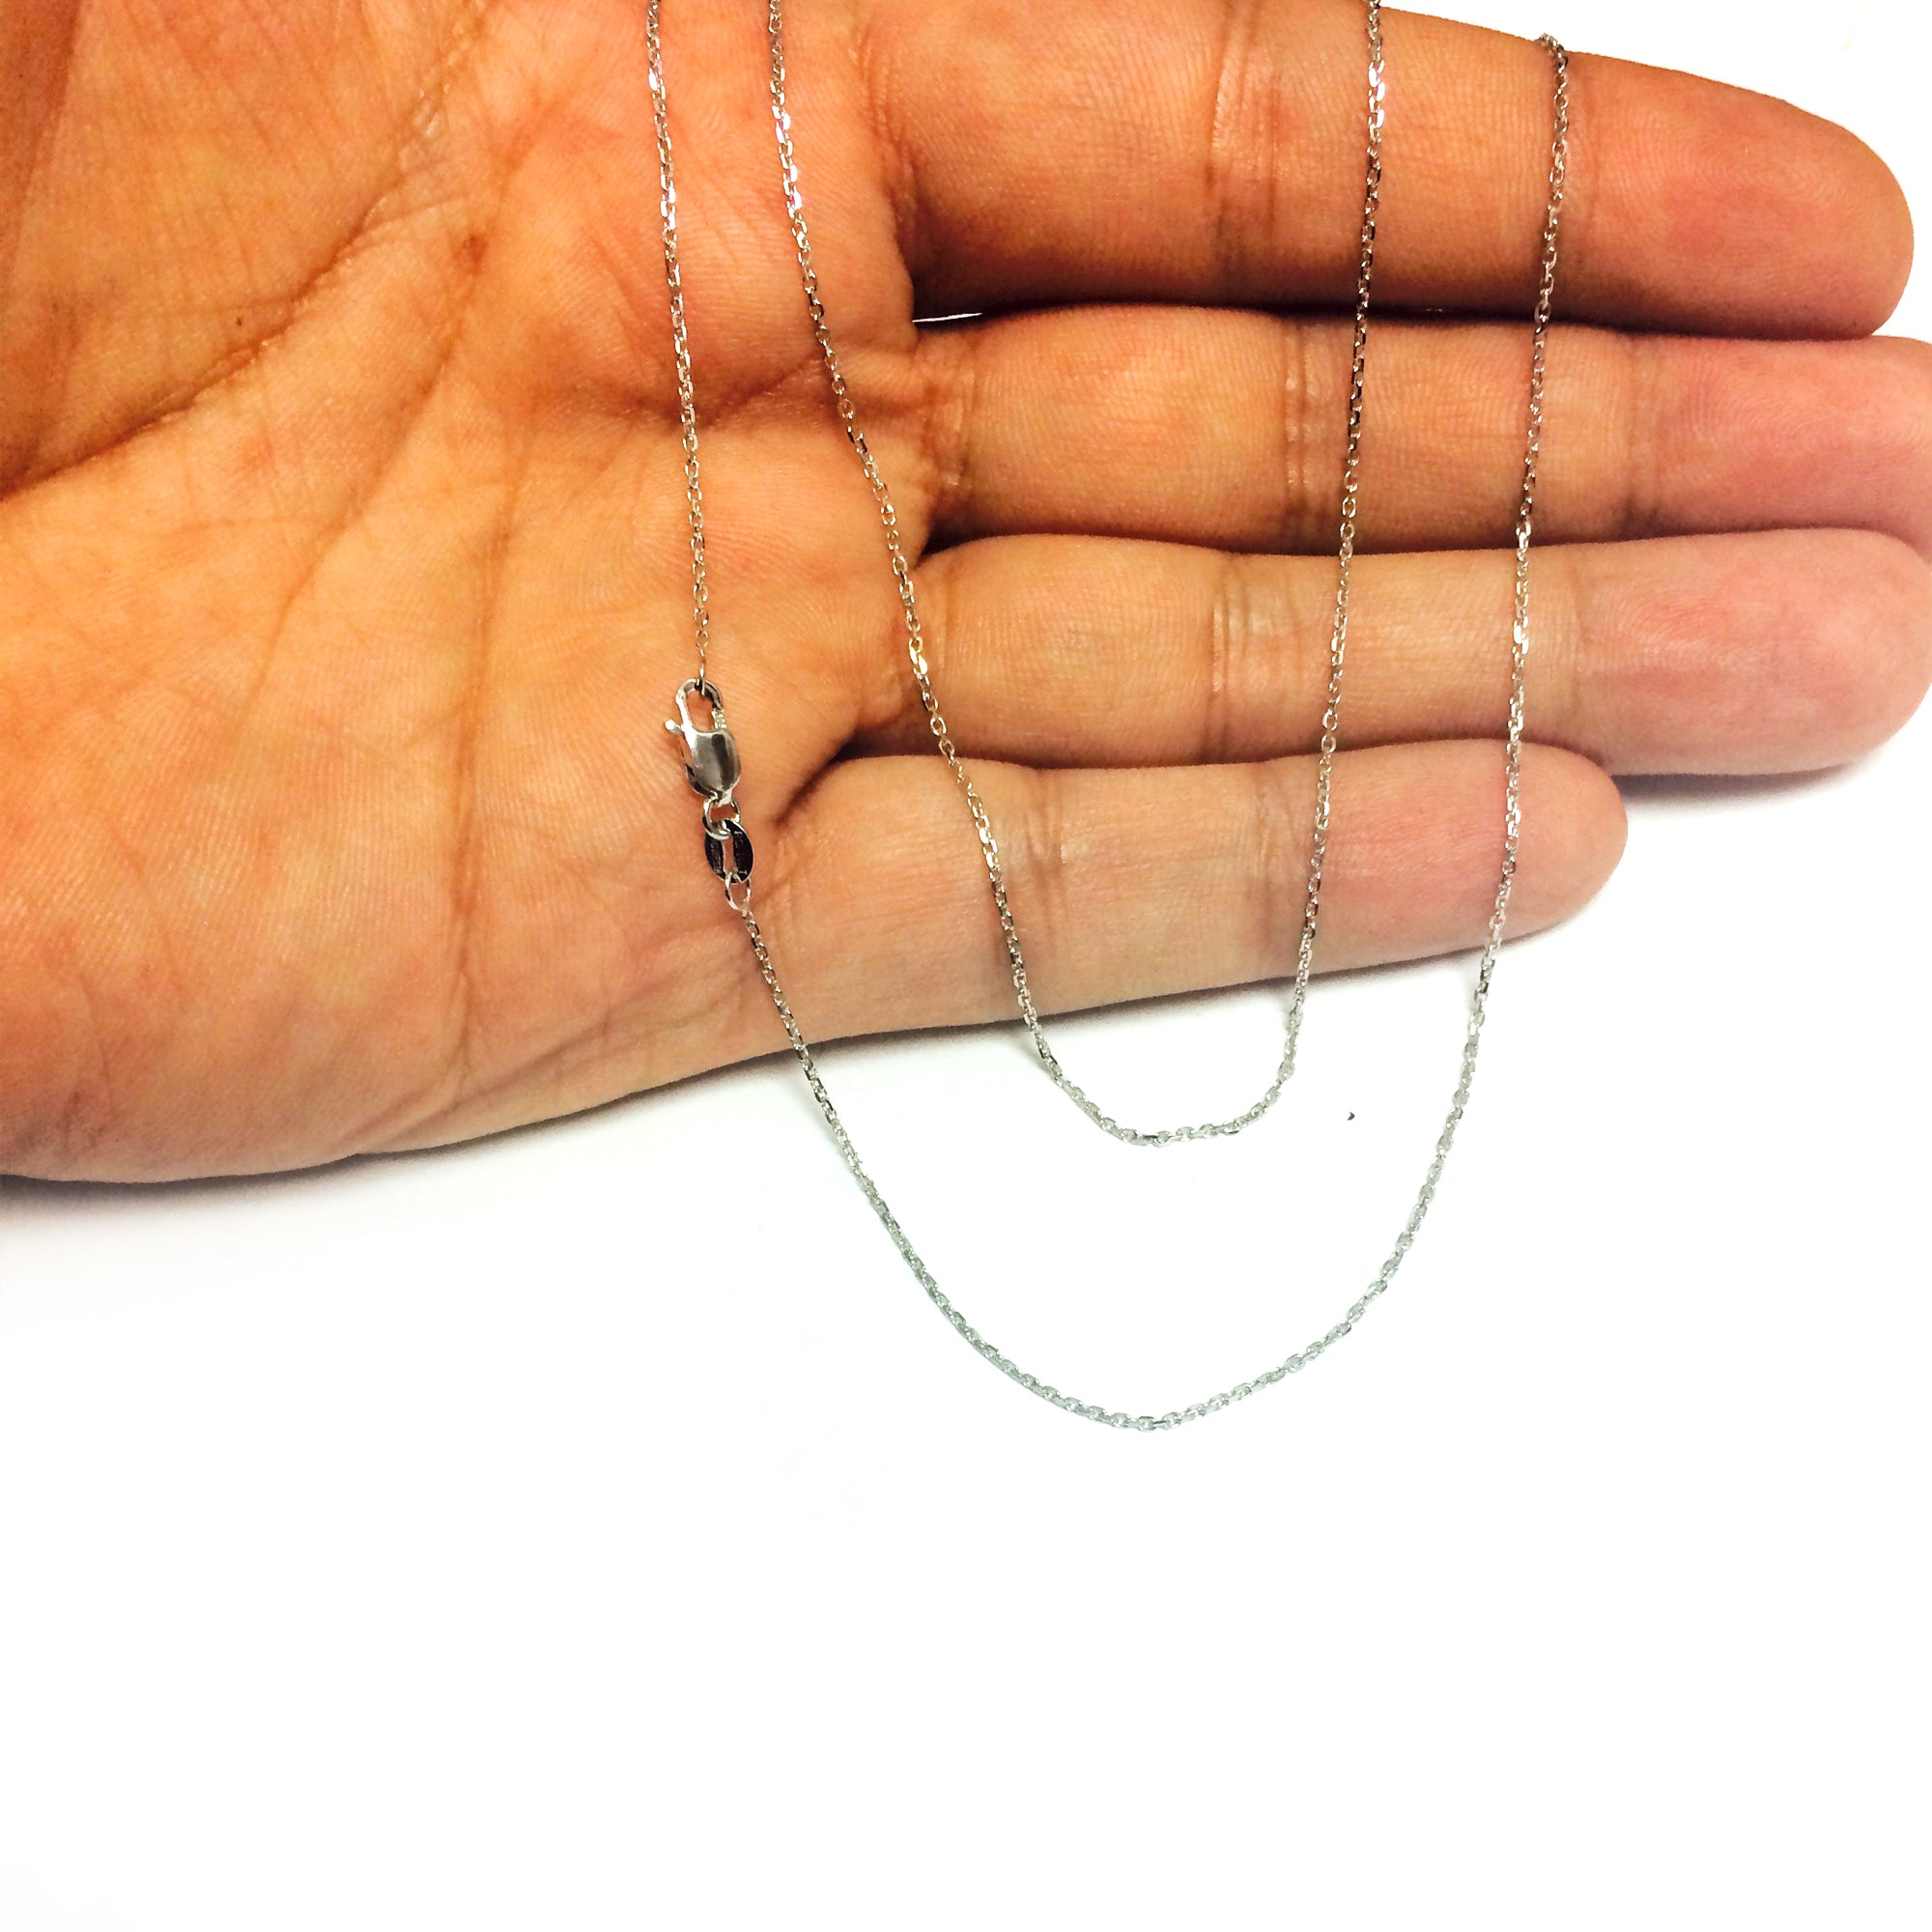 10k hvidguld Cable Link Chain Halskæde, 1 mm, 18" fine designersmykker til mænd og kvinder